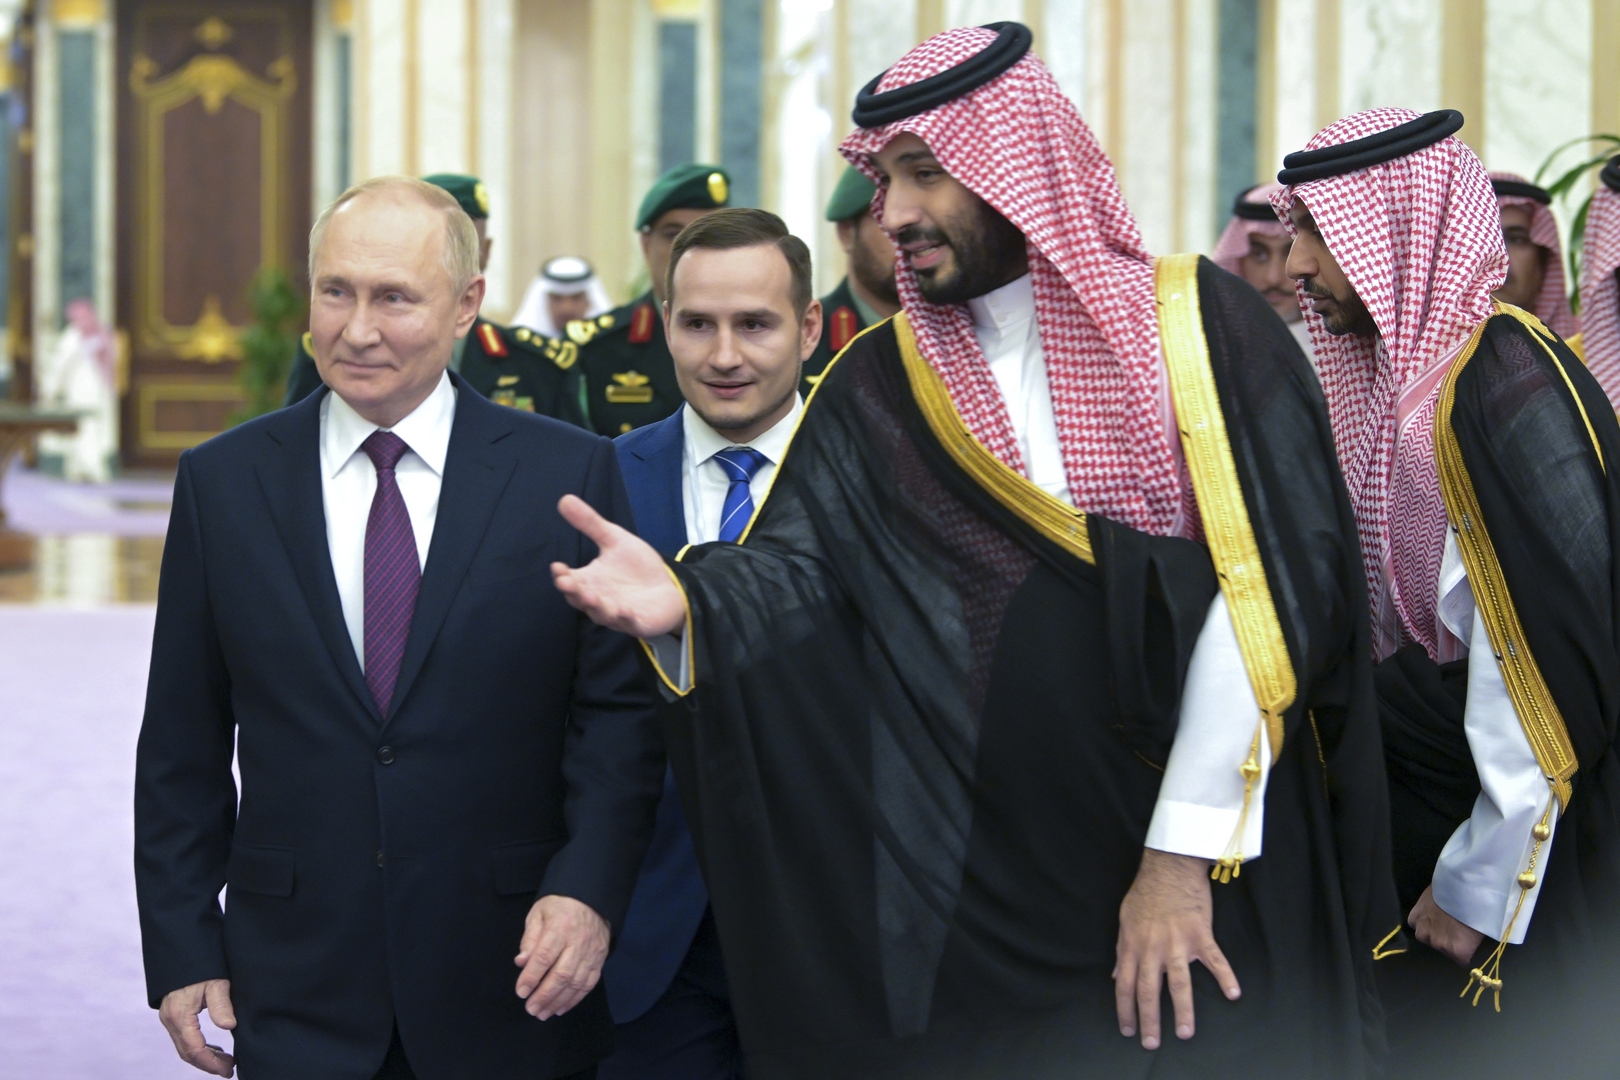 تفاعل كبير على السوشيال ميديا مع زيارة بوتين إلى الإمارات والسعودية